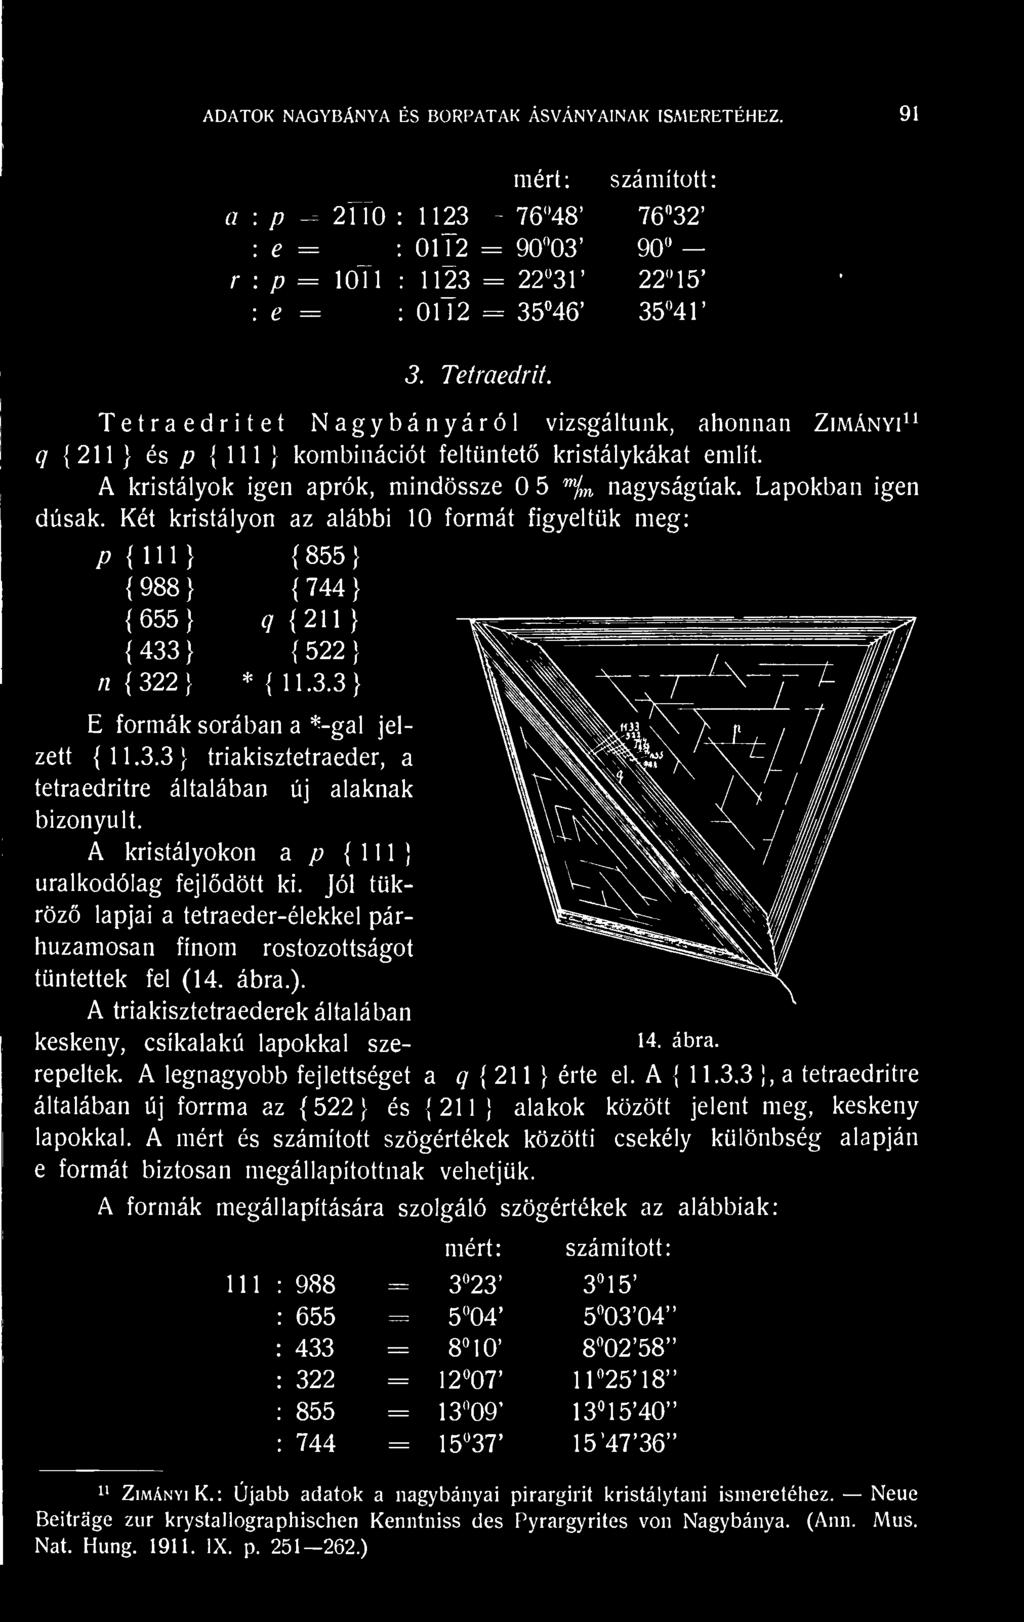 Két kristályon az alábbi 10 formát figyeltük meg: /? 1 1 1 1 855 } 988 1 744 1 655} 9 211 1 433 1 522 1 n 222] *11.3.3 1 E formák sorában a *-gal jelzett 11.3.3} triakisztetraeder, a tetraedritre általában új alaknak bizonyult.